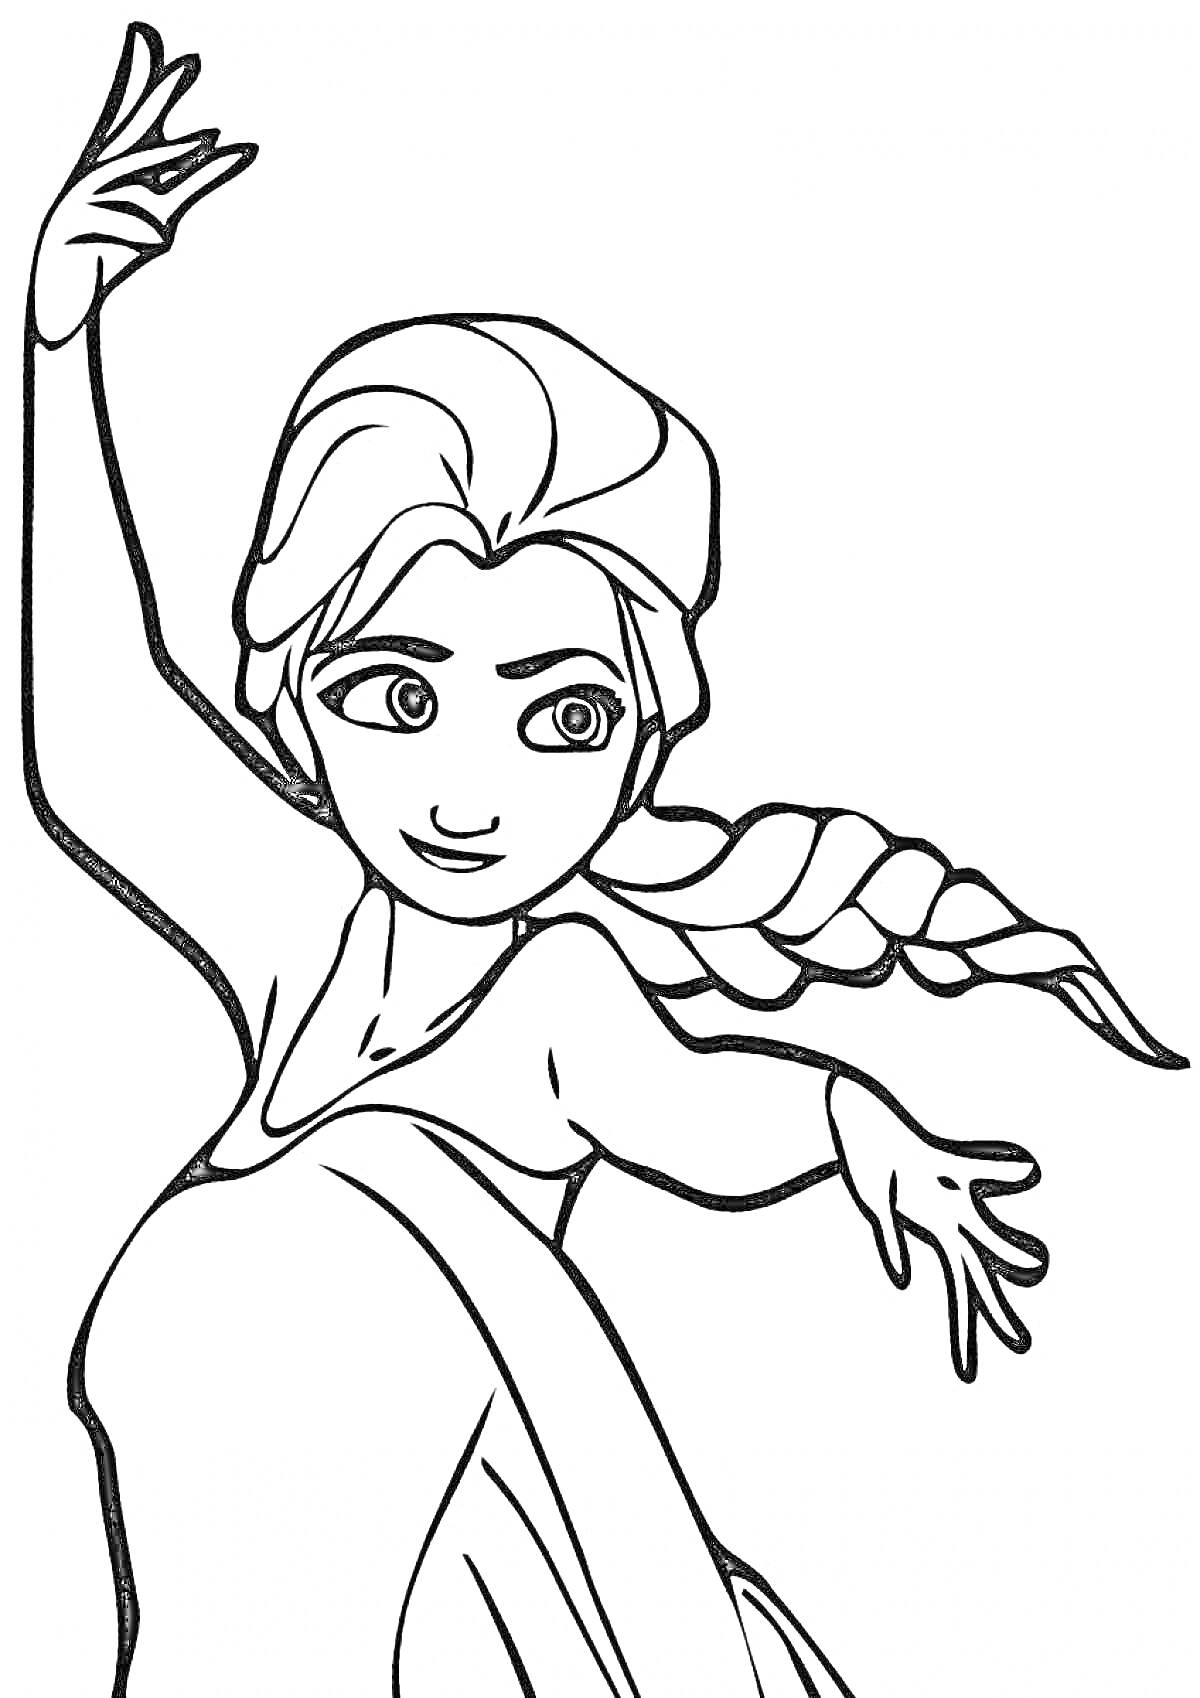 Раскраска Волшебница с заплетённой косой в длинном платье, поднимающая одну руку